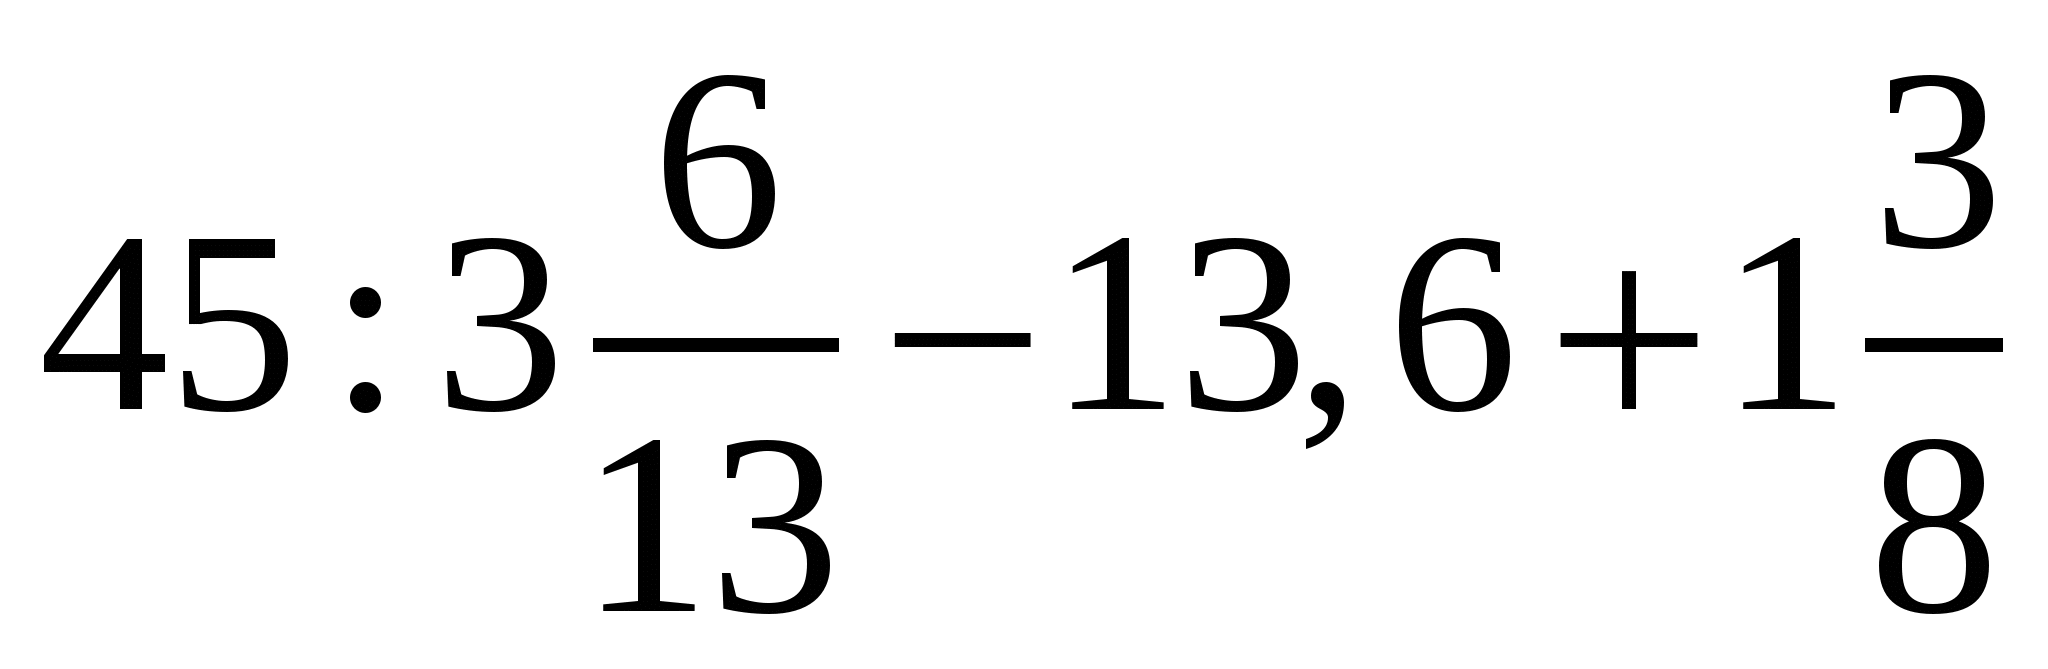 1.6 3.3. 2,6х-0,75=0,9х-35,6. 45 3 6/13-13.6+1 3/8 Решение. Уравнение 2.6х-0.75 0.9х-35.6. 2,6х-0, 75=0, 9х-35, 6 ответ.